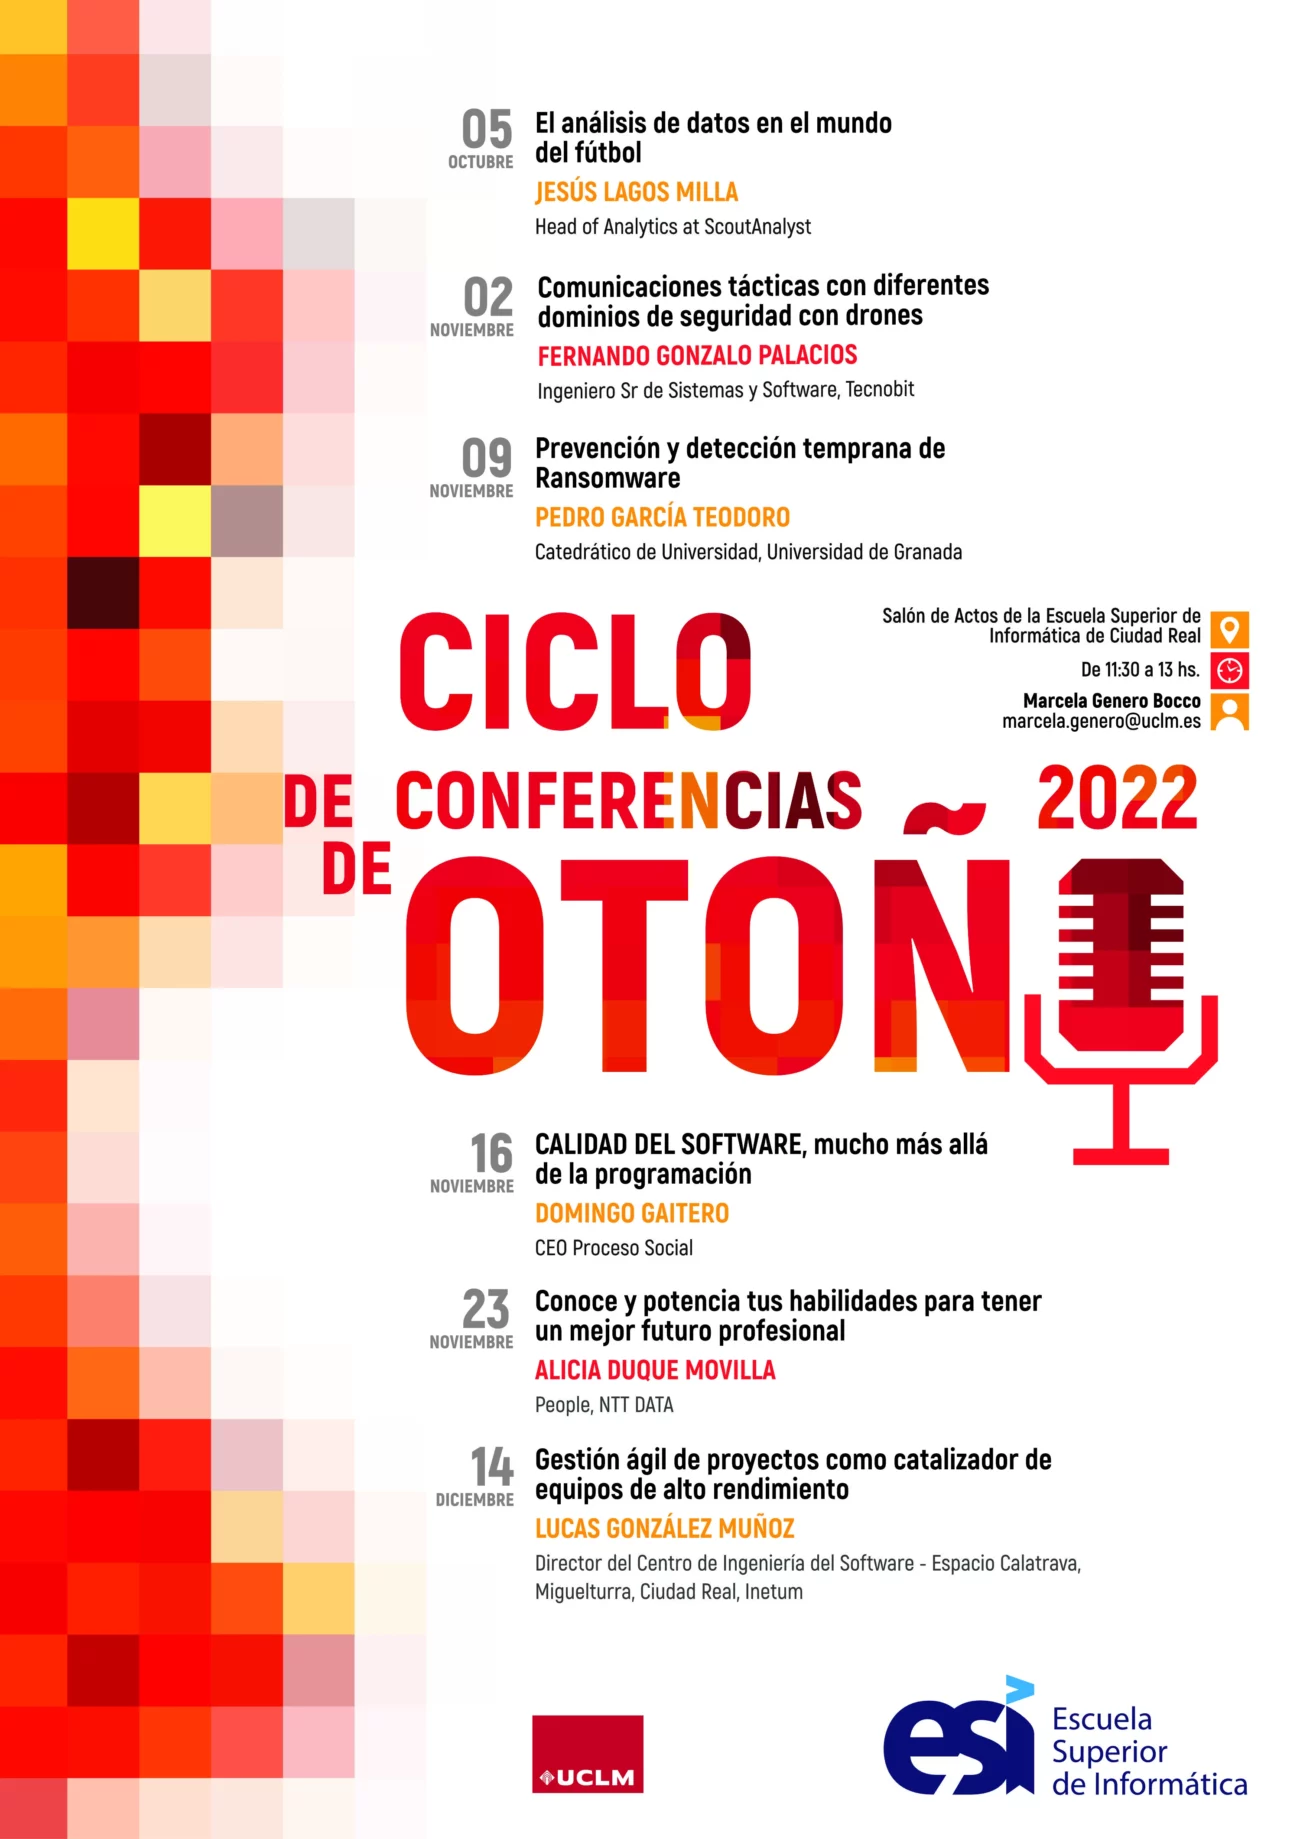 ciclo de conferencias de otoño 2022 en la esi uclm, cartel